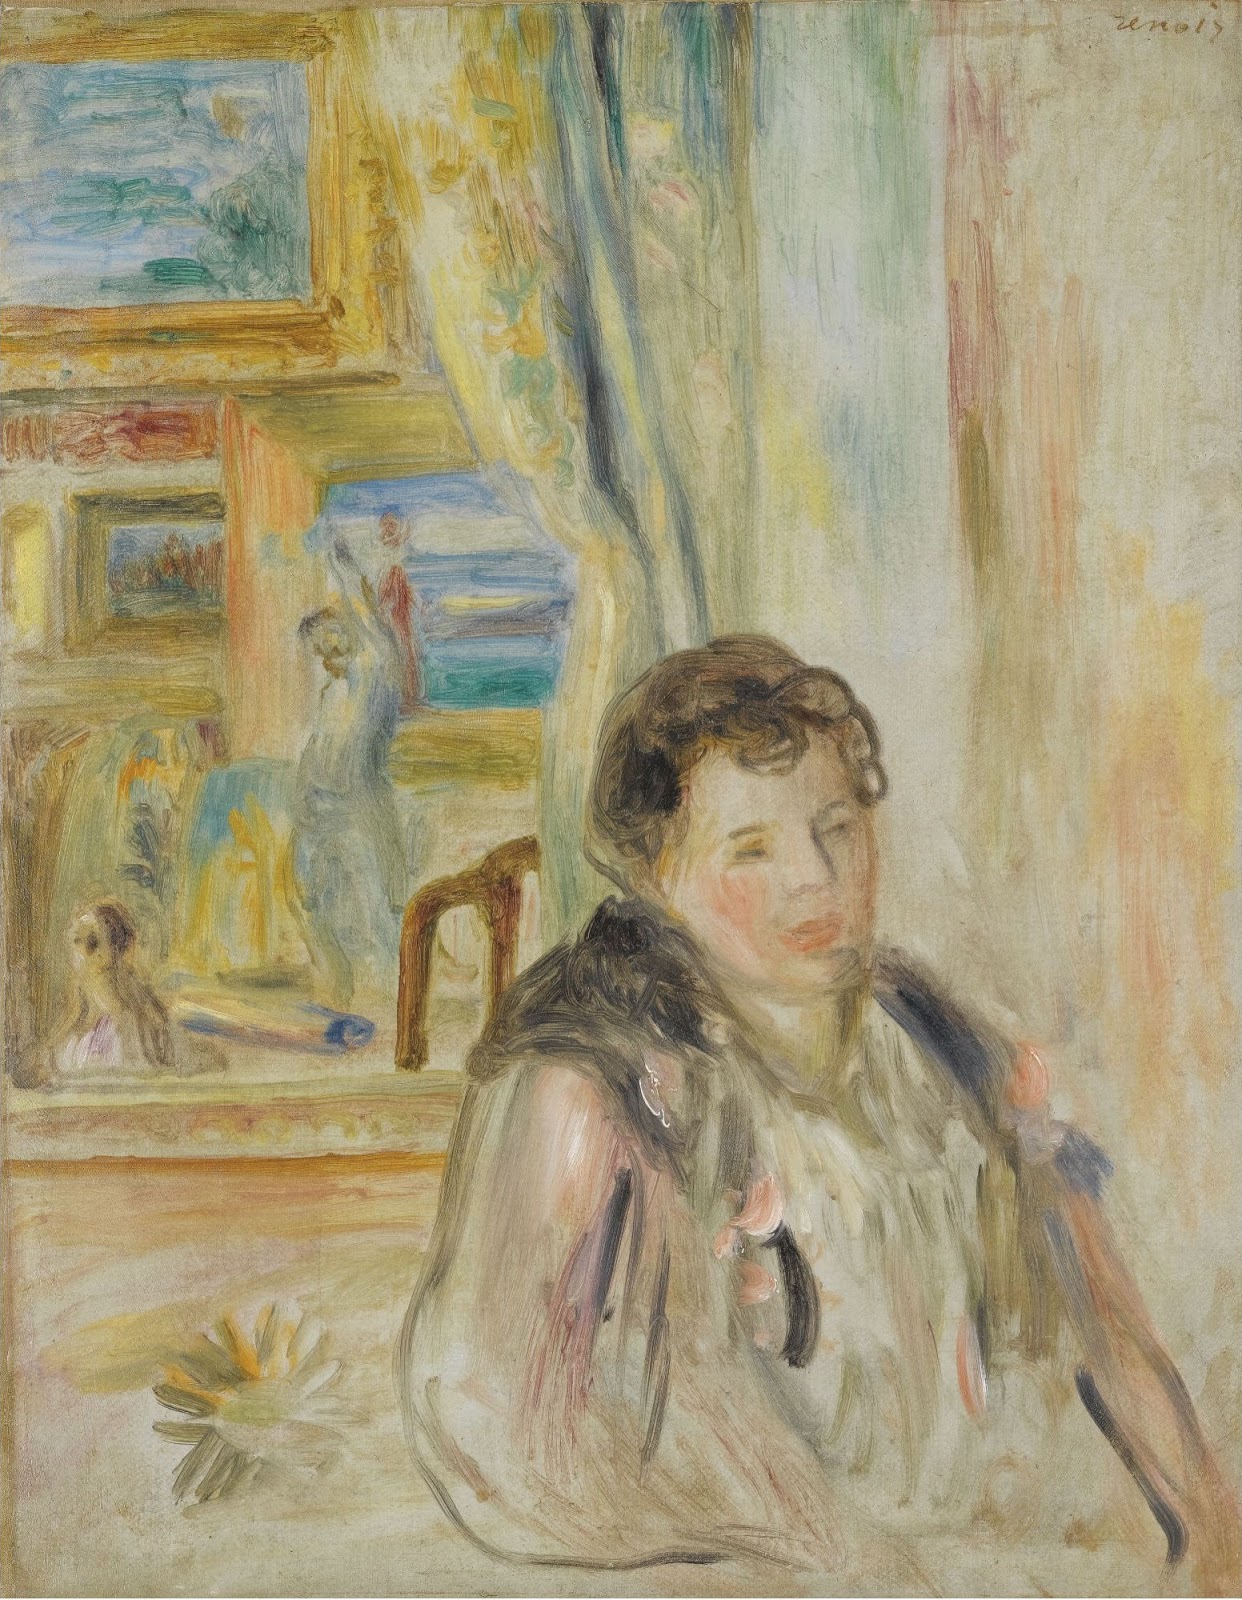 Pierre+Auguste+Renoir-1841-1-19 (892).jpg